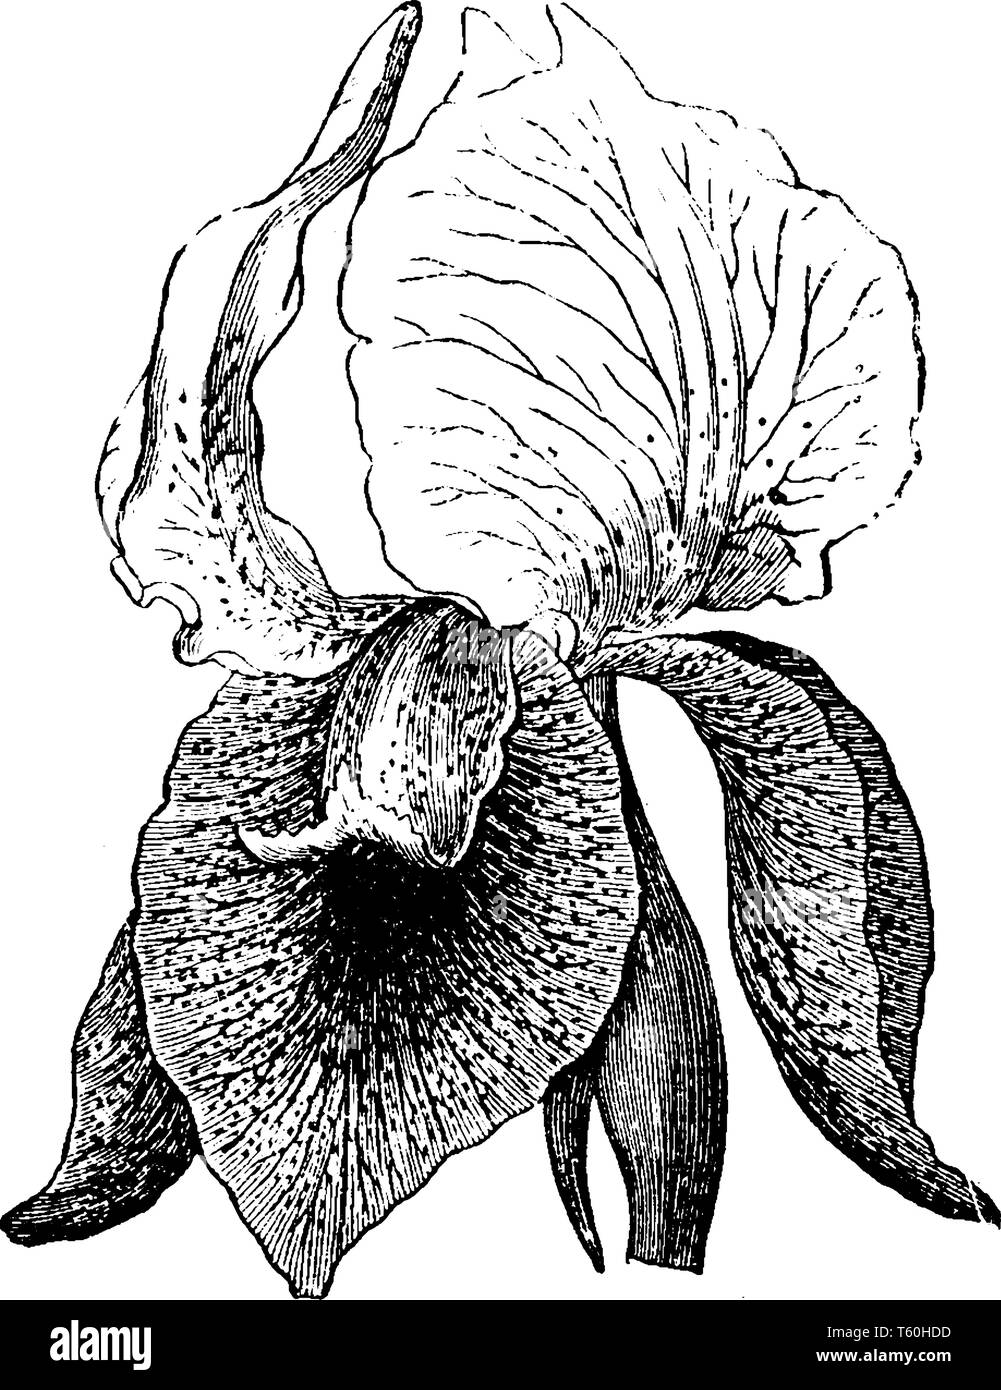 Il s'agit d'une plante connue sous le nom de Iris iberica. Les fleurs sont blanches ou lilas pâle et croître seul sur chaque tige, vintage dessin ou gravure illustration. Illustration de Vecteur